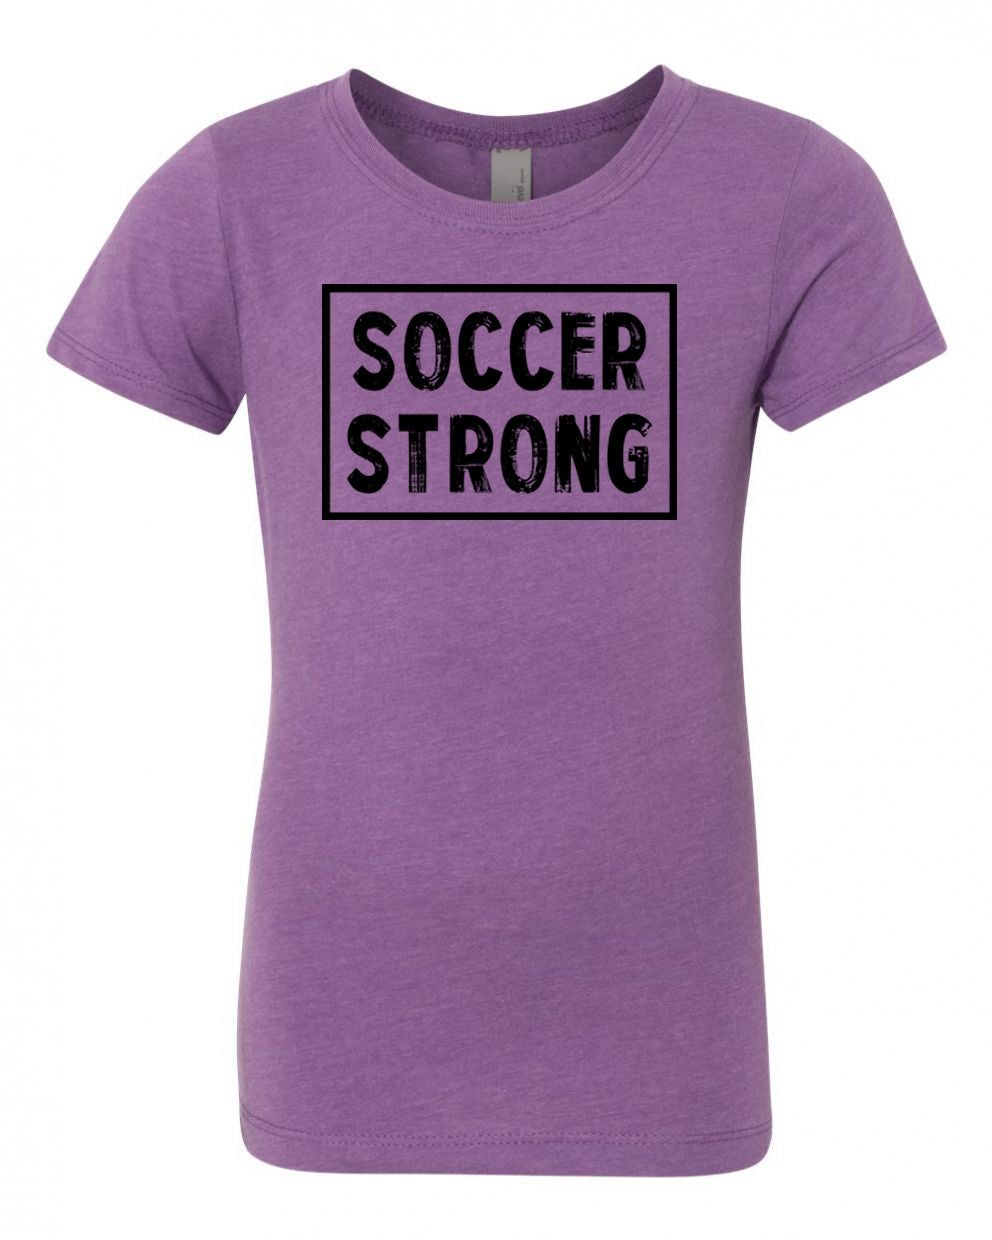 Soccer Strong Girls T-Shirt Purple Berry